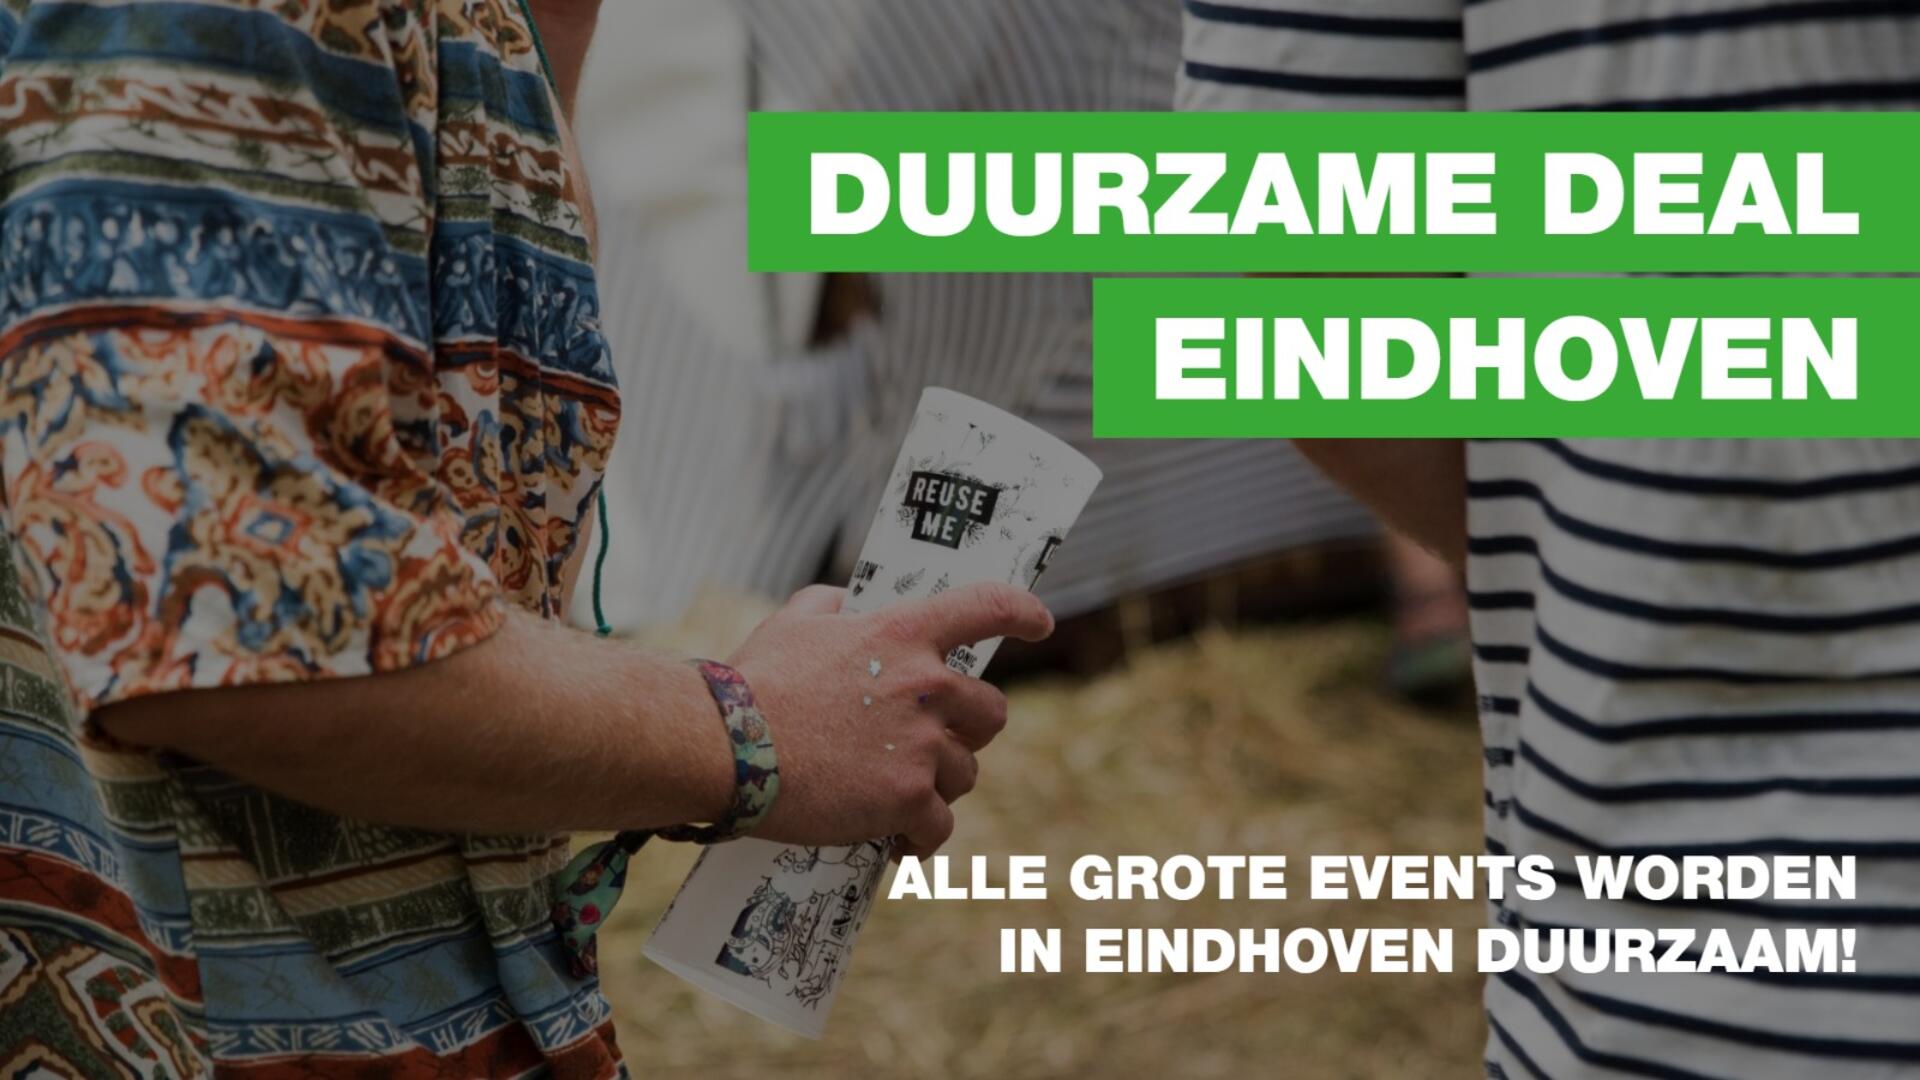 Foto van een hand die een reusable cup vasthoudt met de tekst Duurzame Deal Eindhoven, alle grote events worden in Eindhoven duurzaam